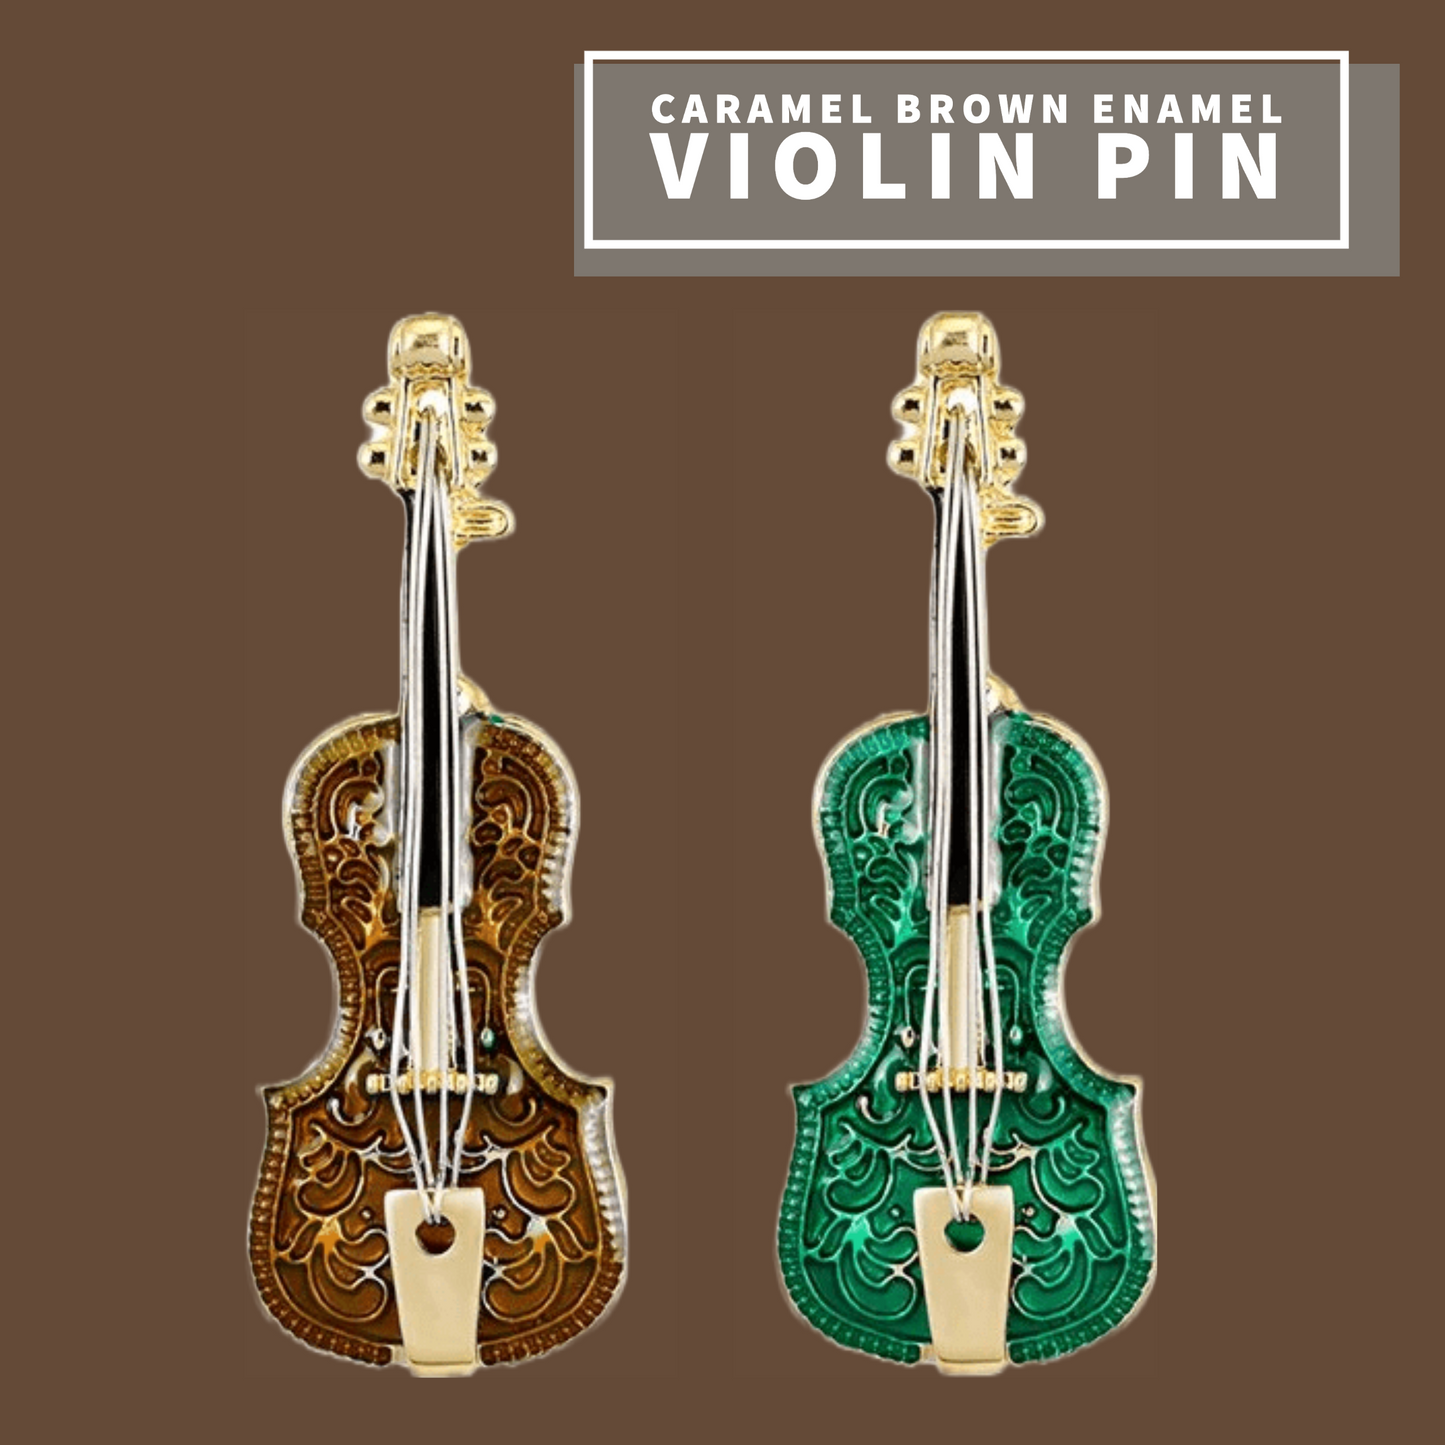 Caramel Brown Violin Enamel Pin